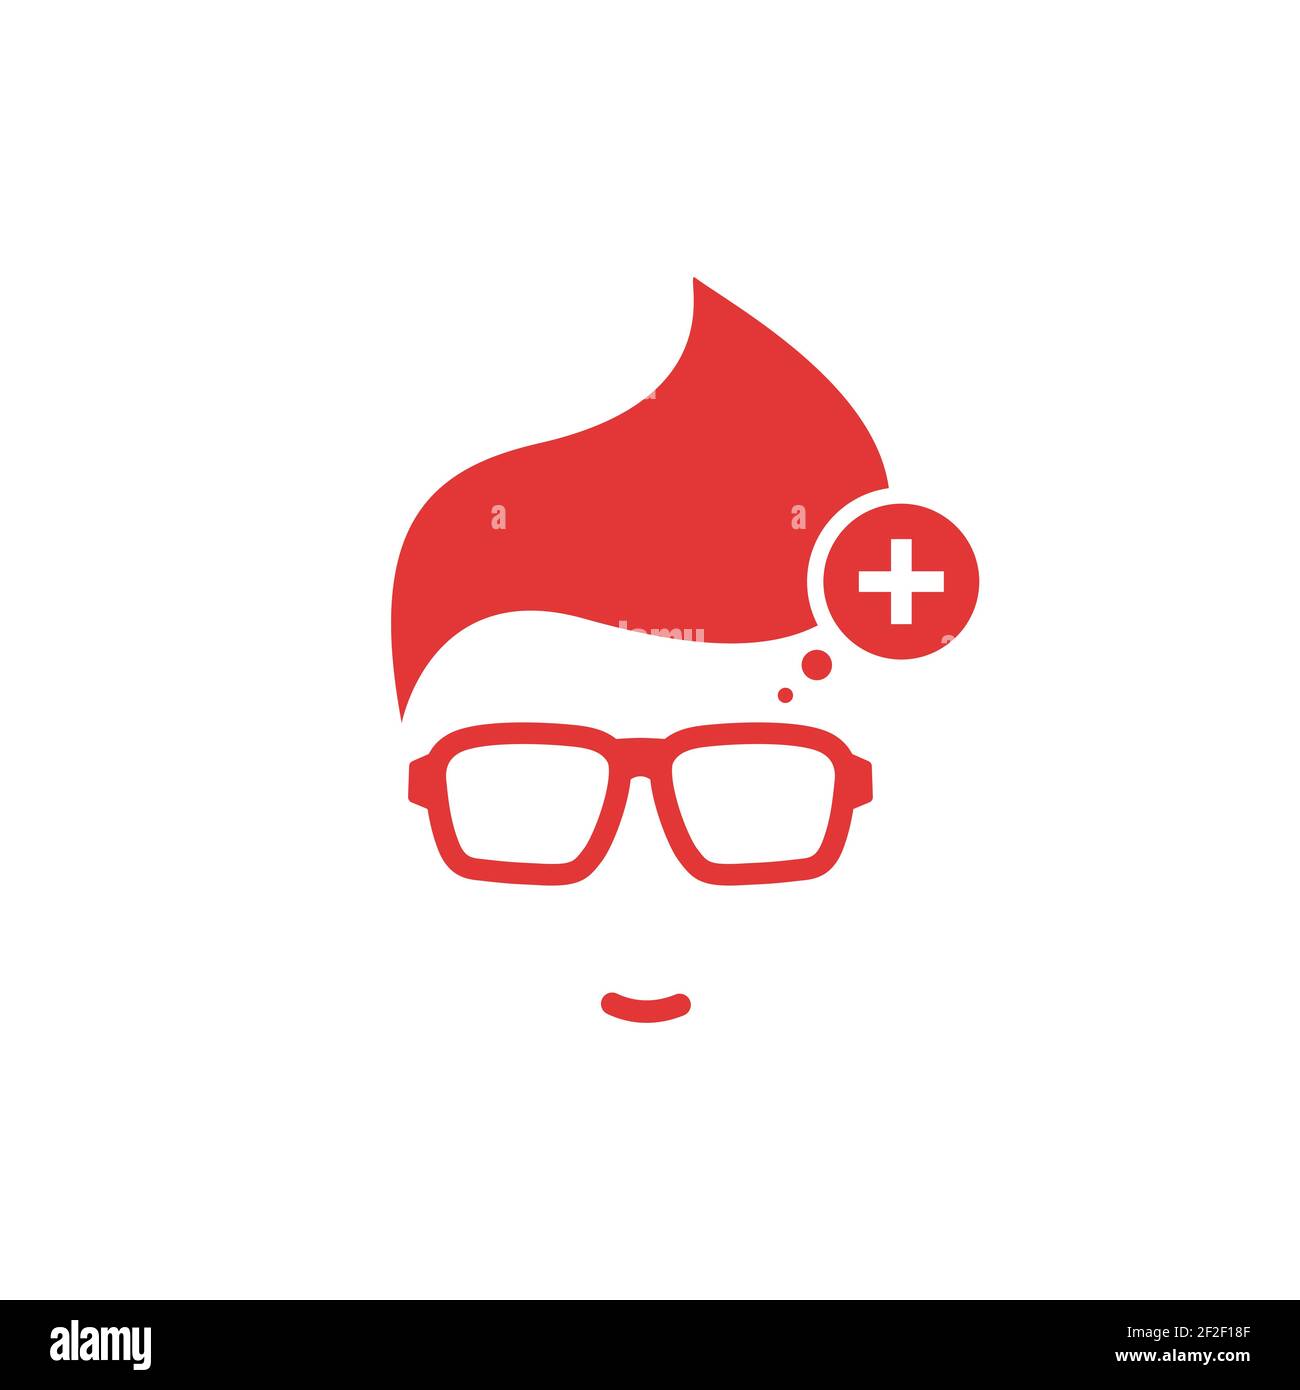 Silhouette des Mannes Kopf in Hipster Brille und Schweiz Flagge im Kreis .  Roter einfacher Avatar. schweizer Sprachsymbol. Länderzeichen wählen.  Isoliert ein Stock-Vektorgrafik - Alamy